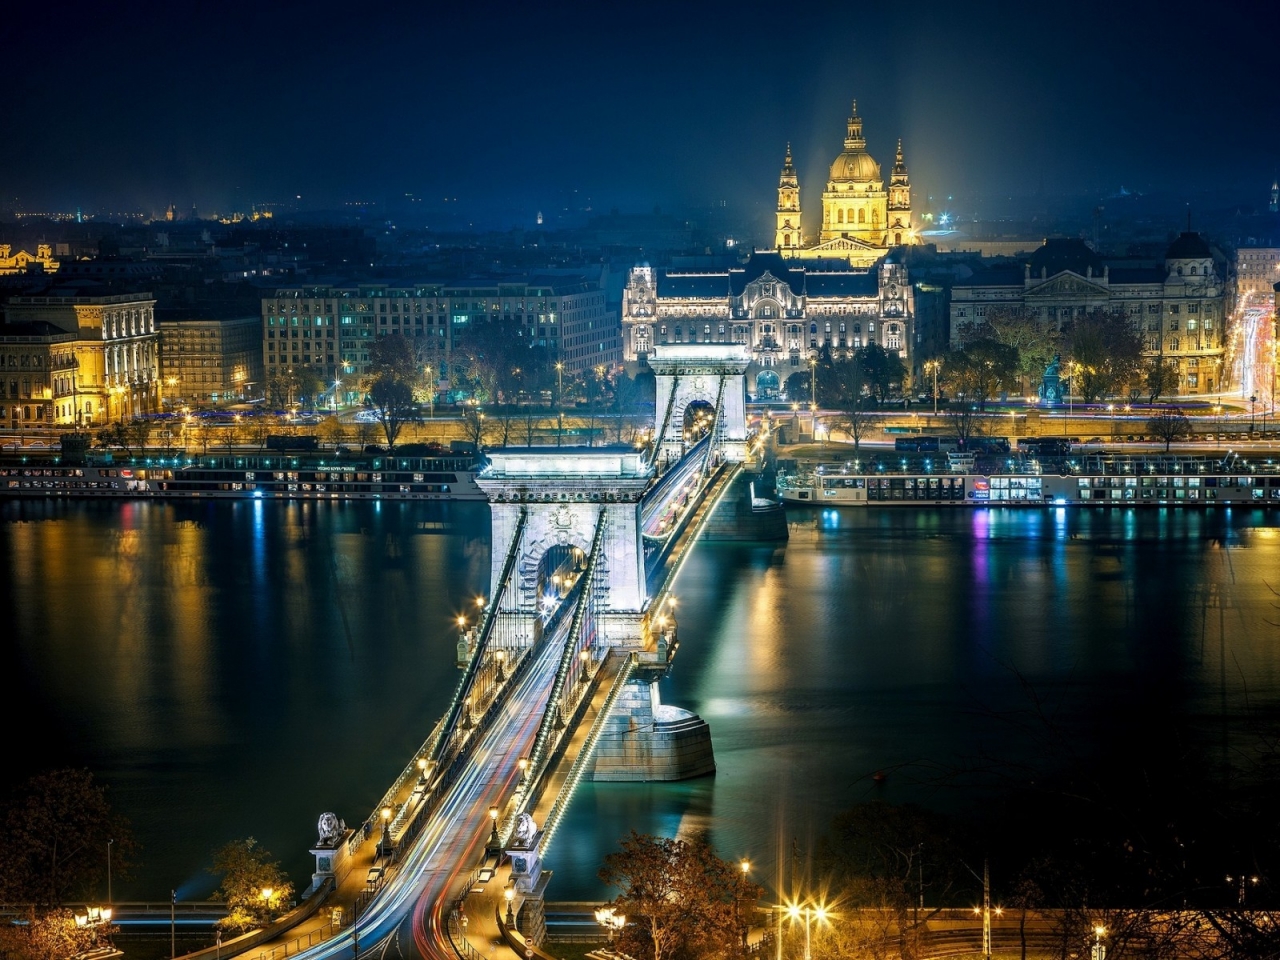 Szechenyi Chain Bridge Budapest for 1280 x 960 resolution